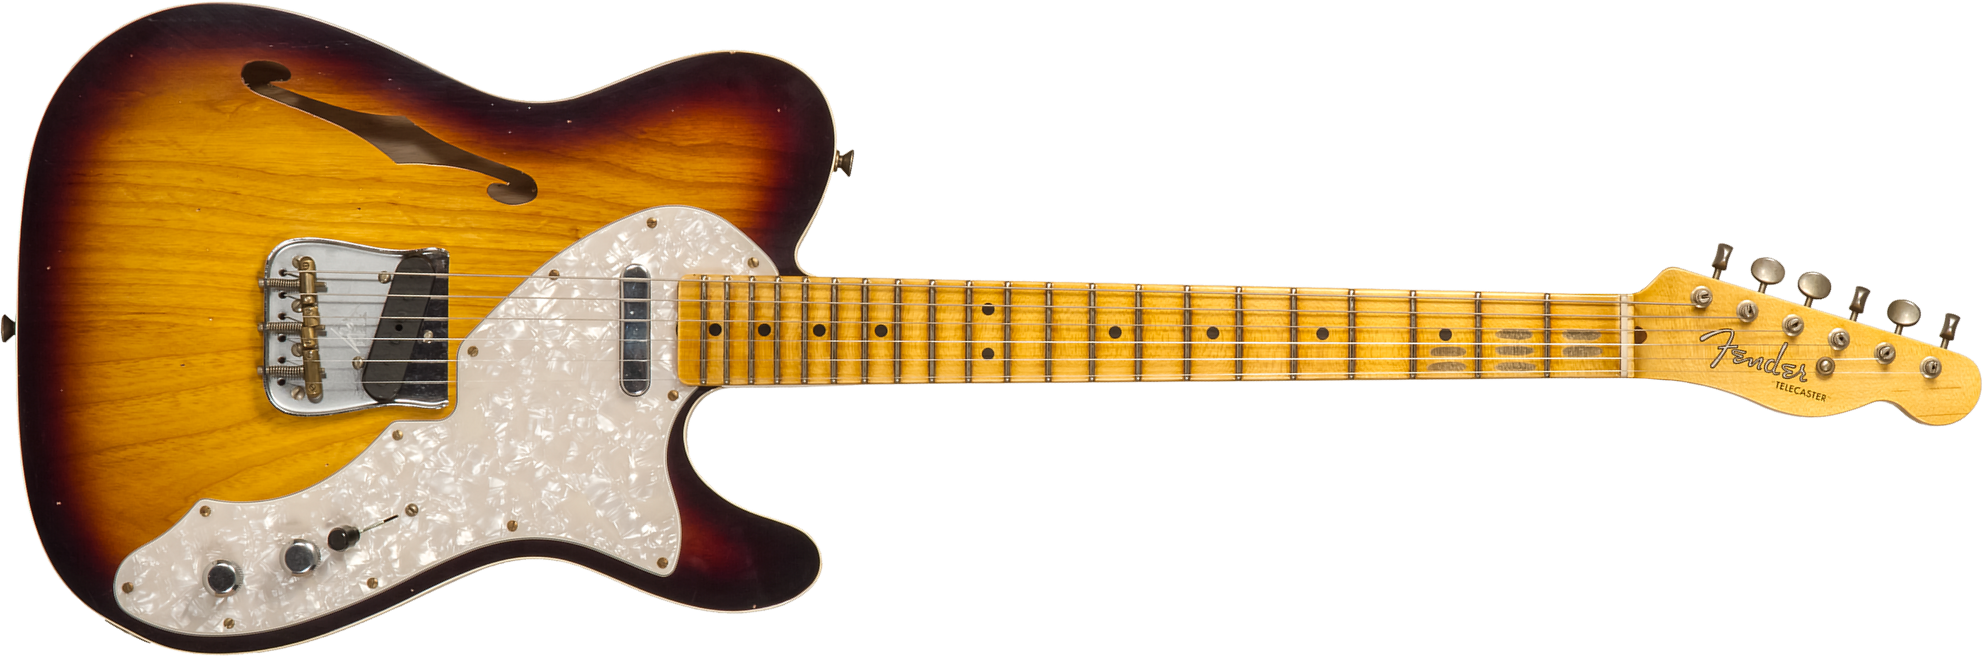 Fender Custom Shop Tele Thinline 50s Mn #cz574212 - Journeyman Relic Aged 2-color Sunburst - Guitare Électrique Forme Tel - Main picture